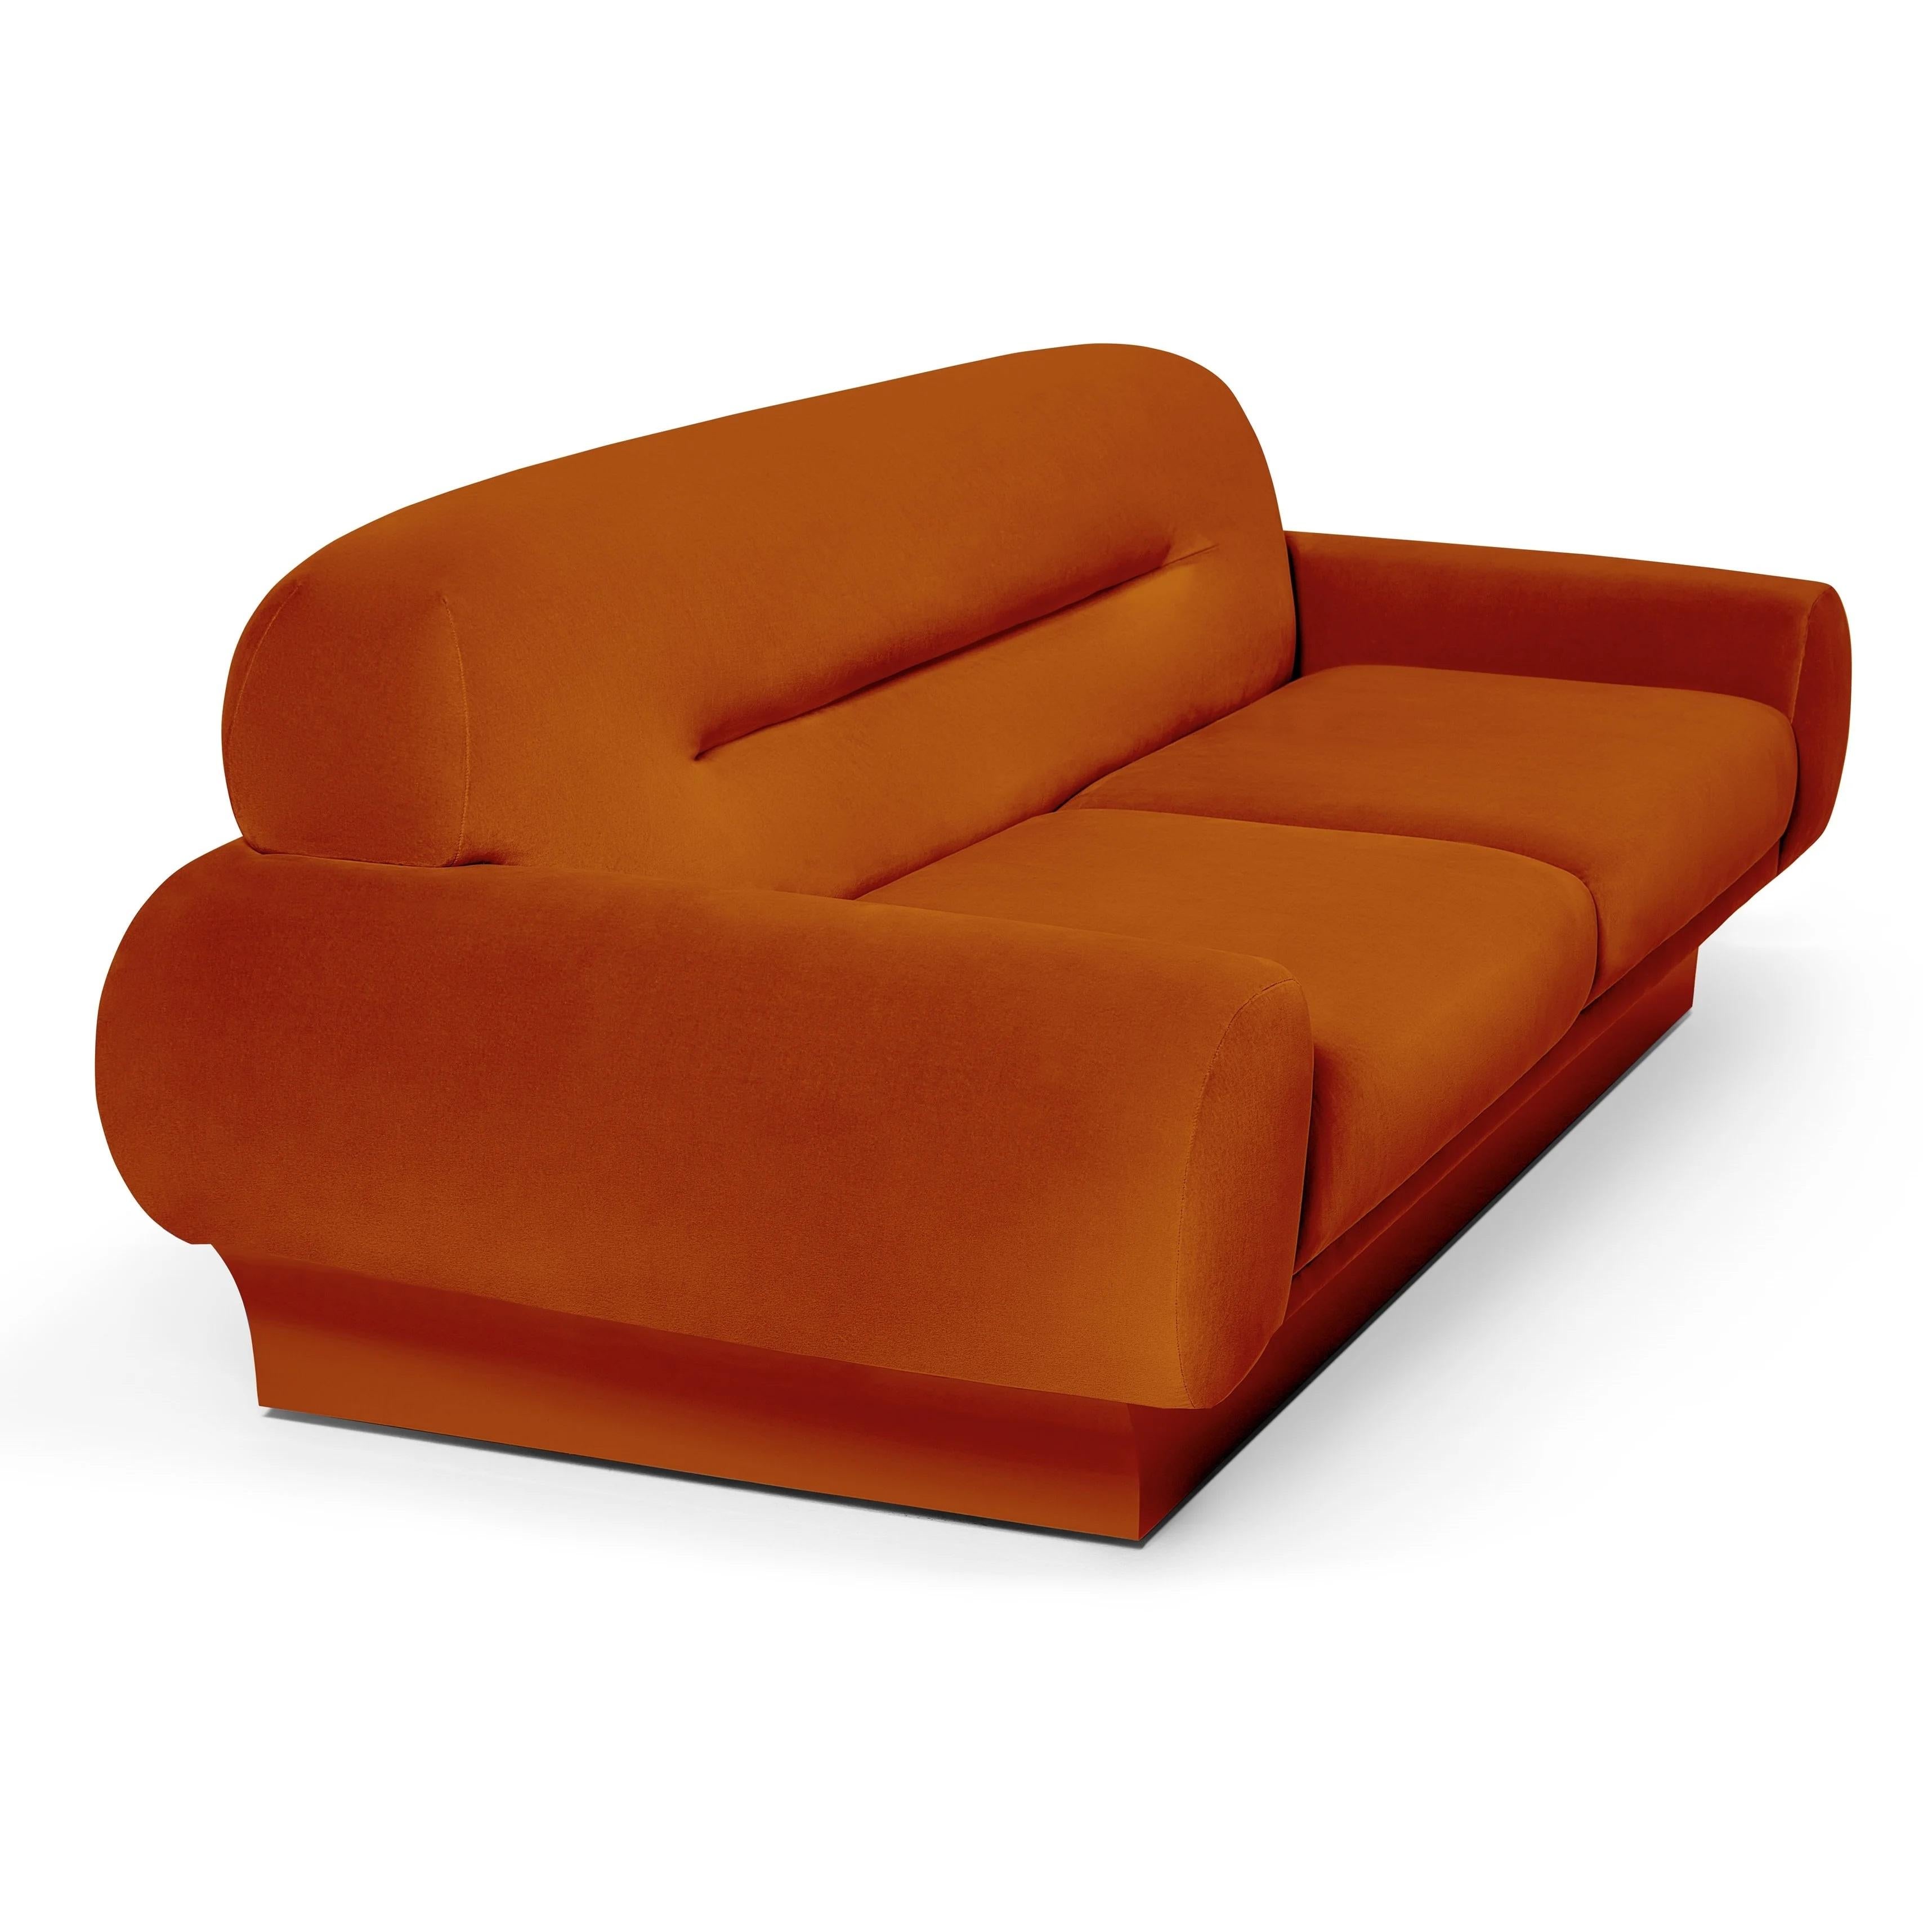 Dieses Sofa hat eine eindrucksvolle Silhouette. Die übergroßen, sanft geschwungenen Arm- und Rückenlehnen passen sowohl zu formellen als auch zu legeren Anlässen und sorgen für entspannten Komfort. Sie ist groß, kurvenreich und